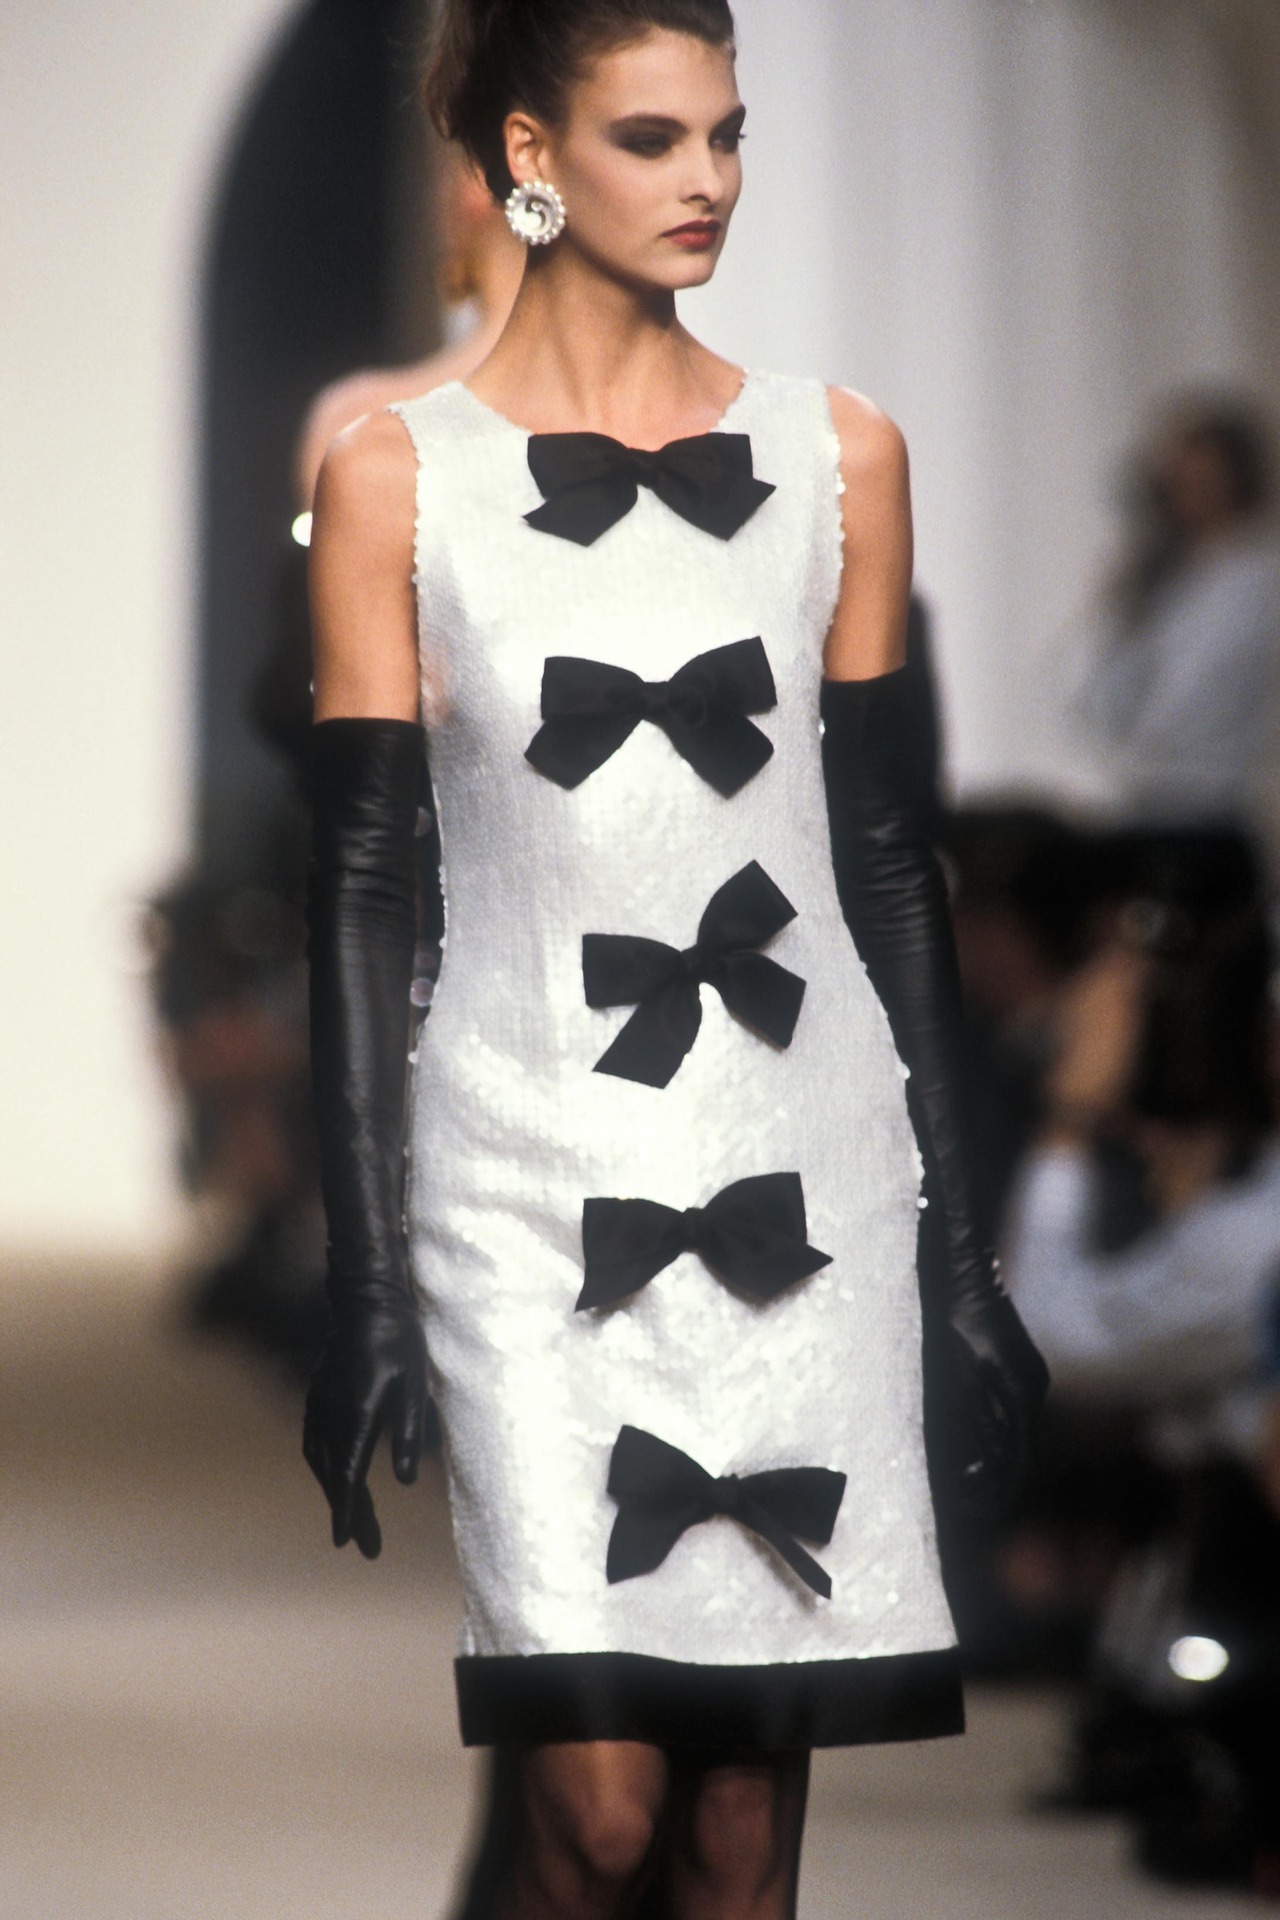 La Linda Evangelista | Chanel S/S 1987 Model: Linda Evangelista